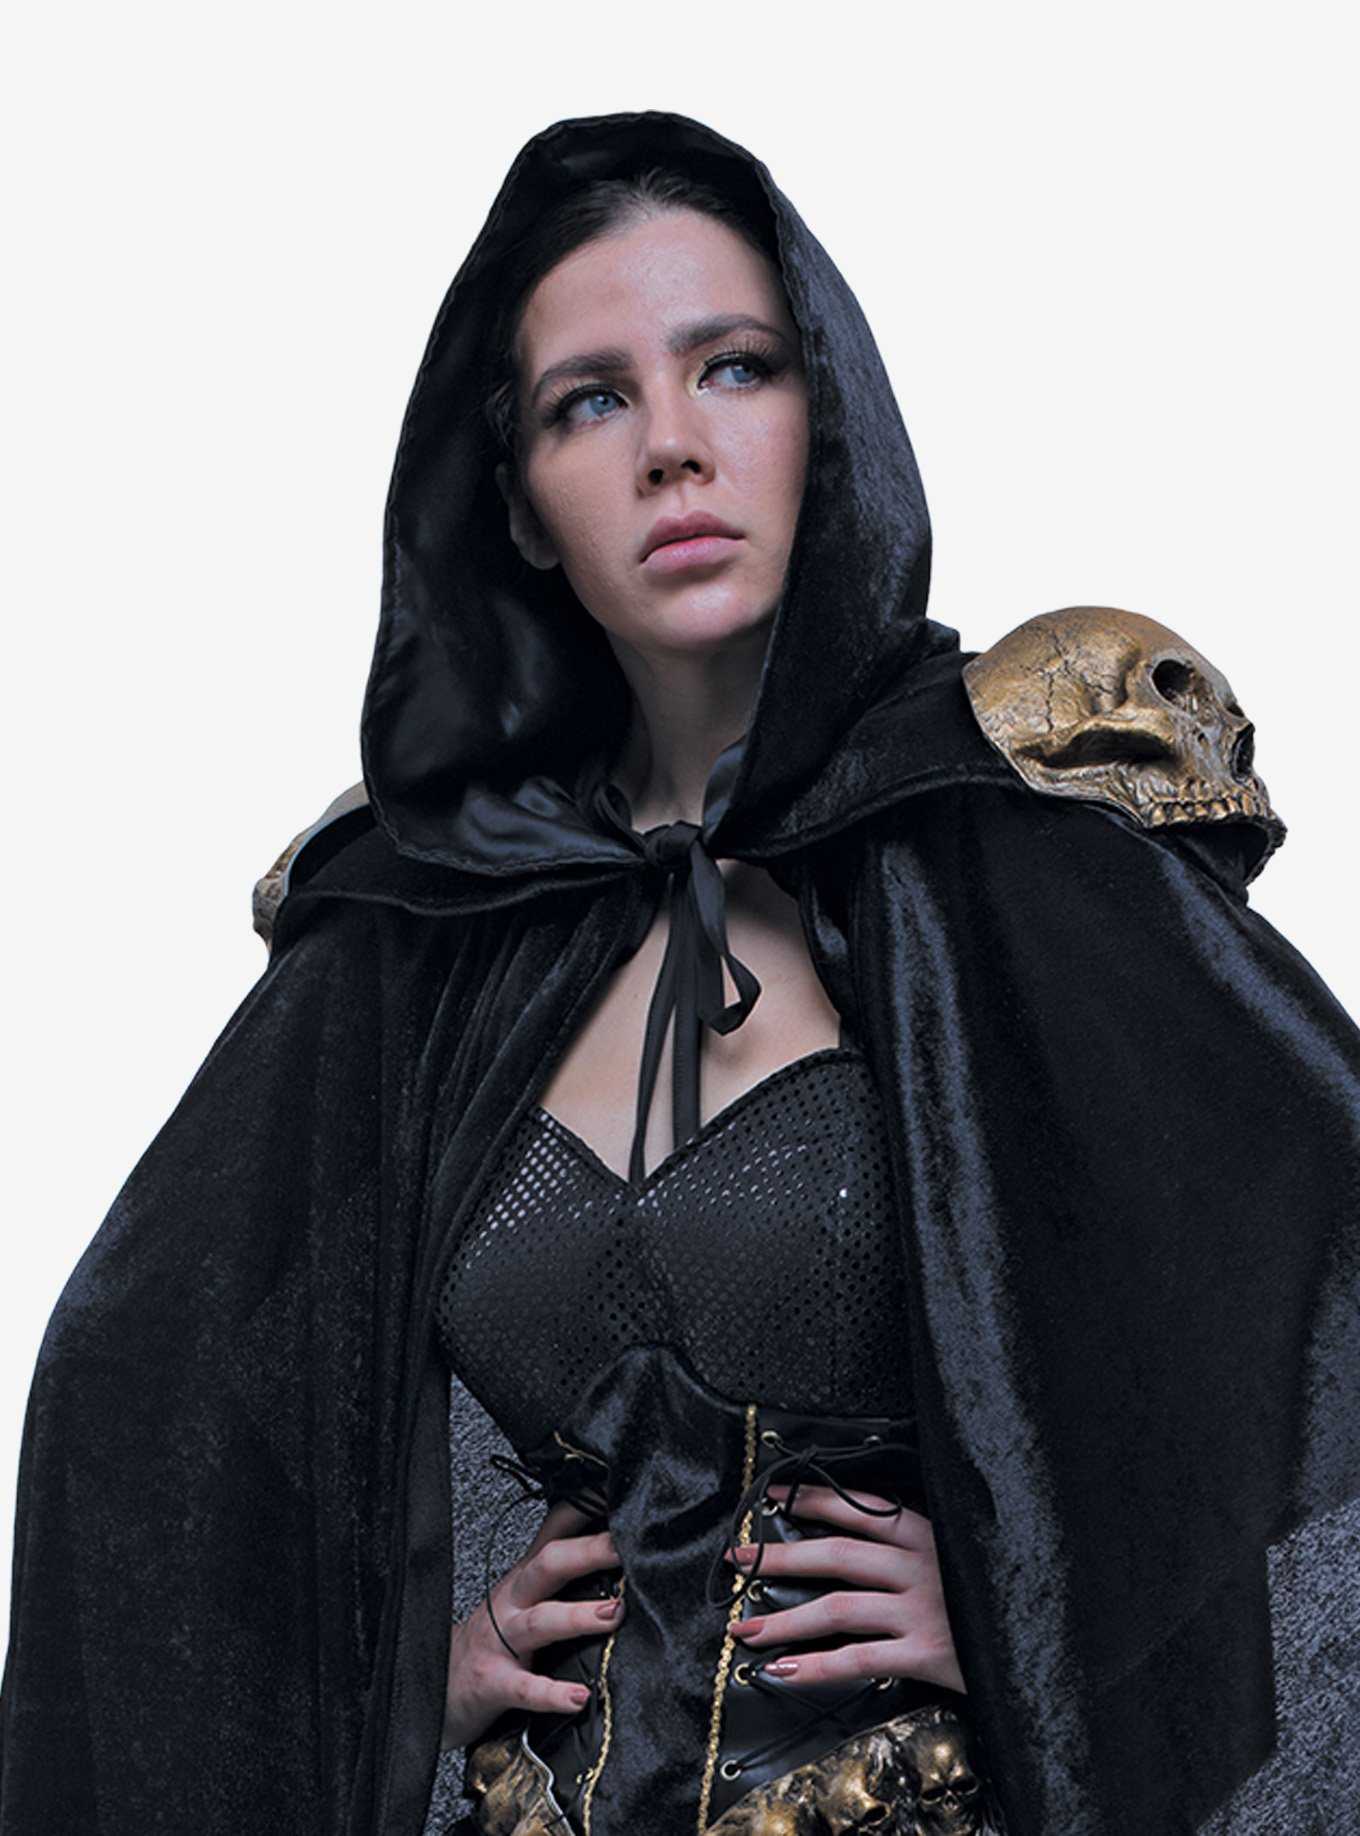 Love Death Costume, , hi-res